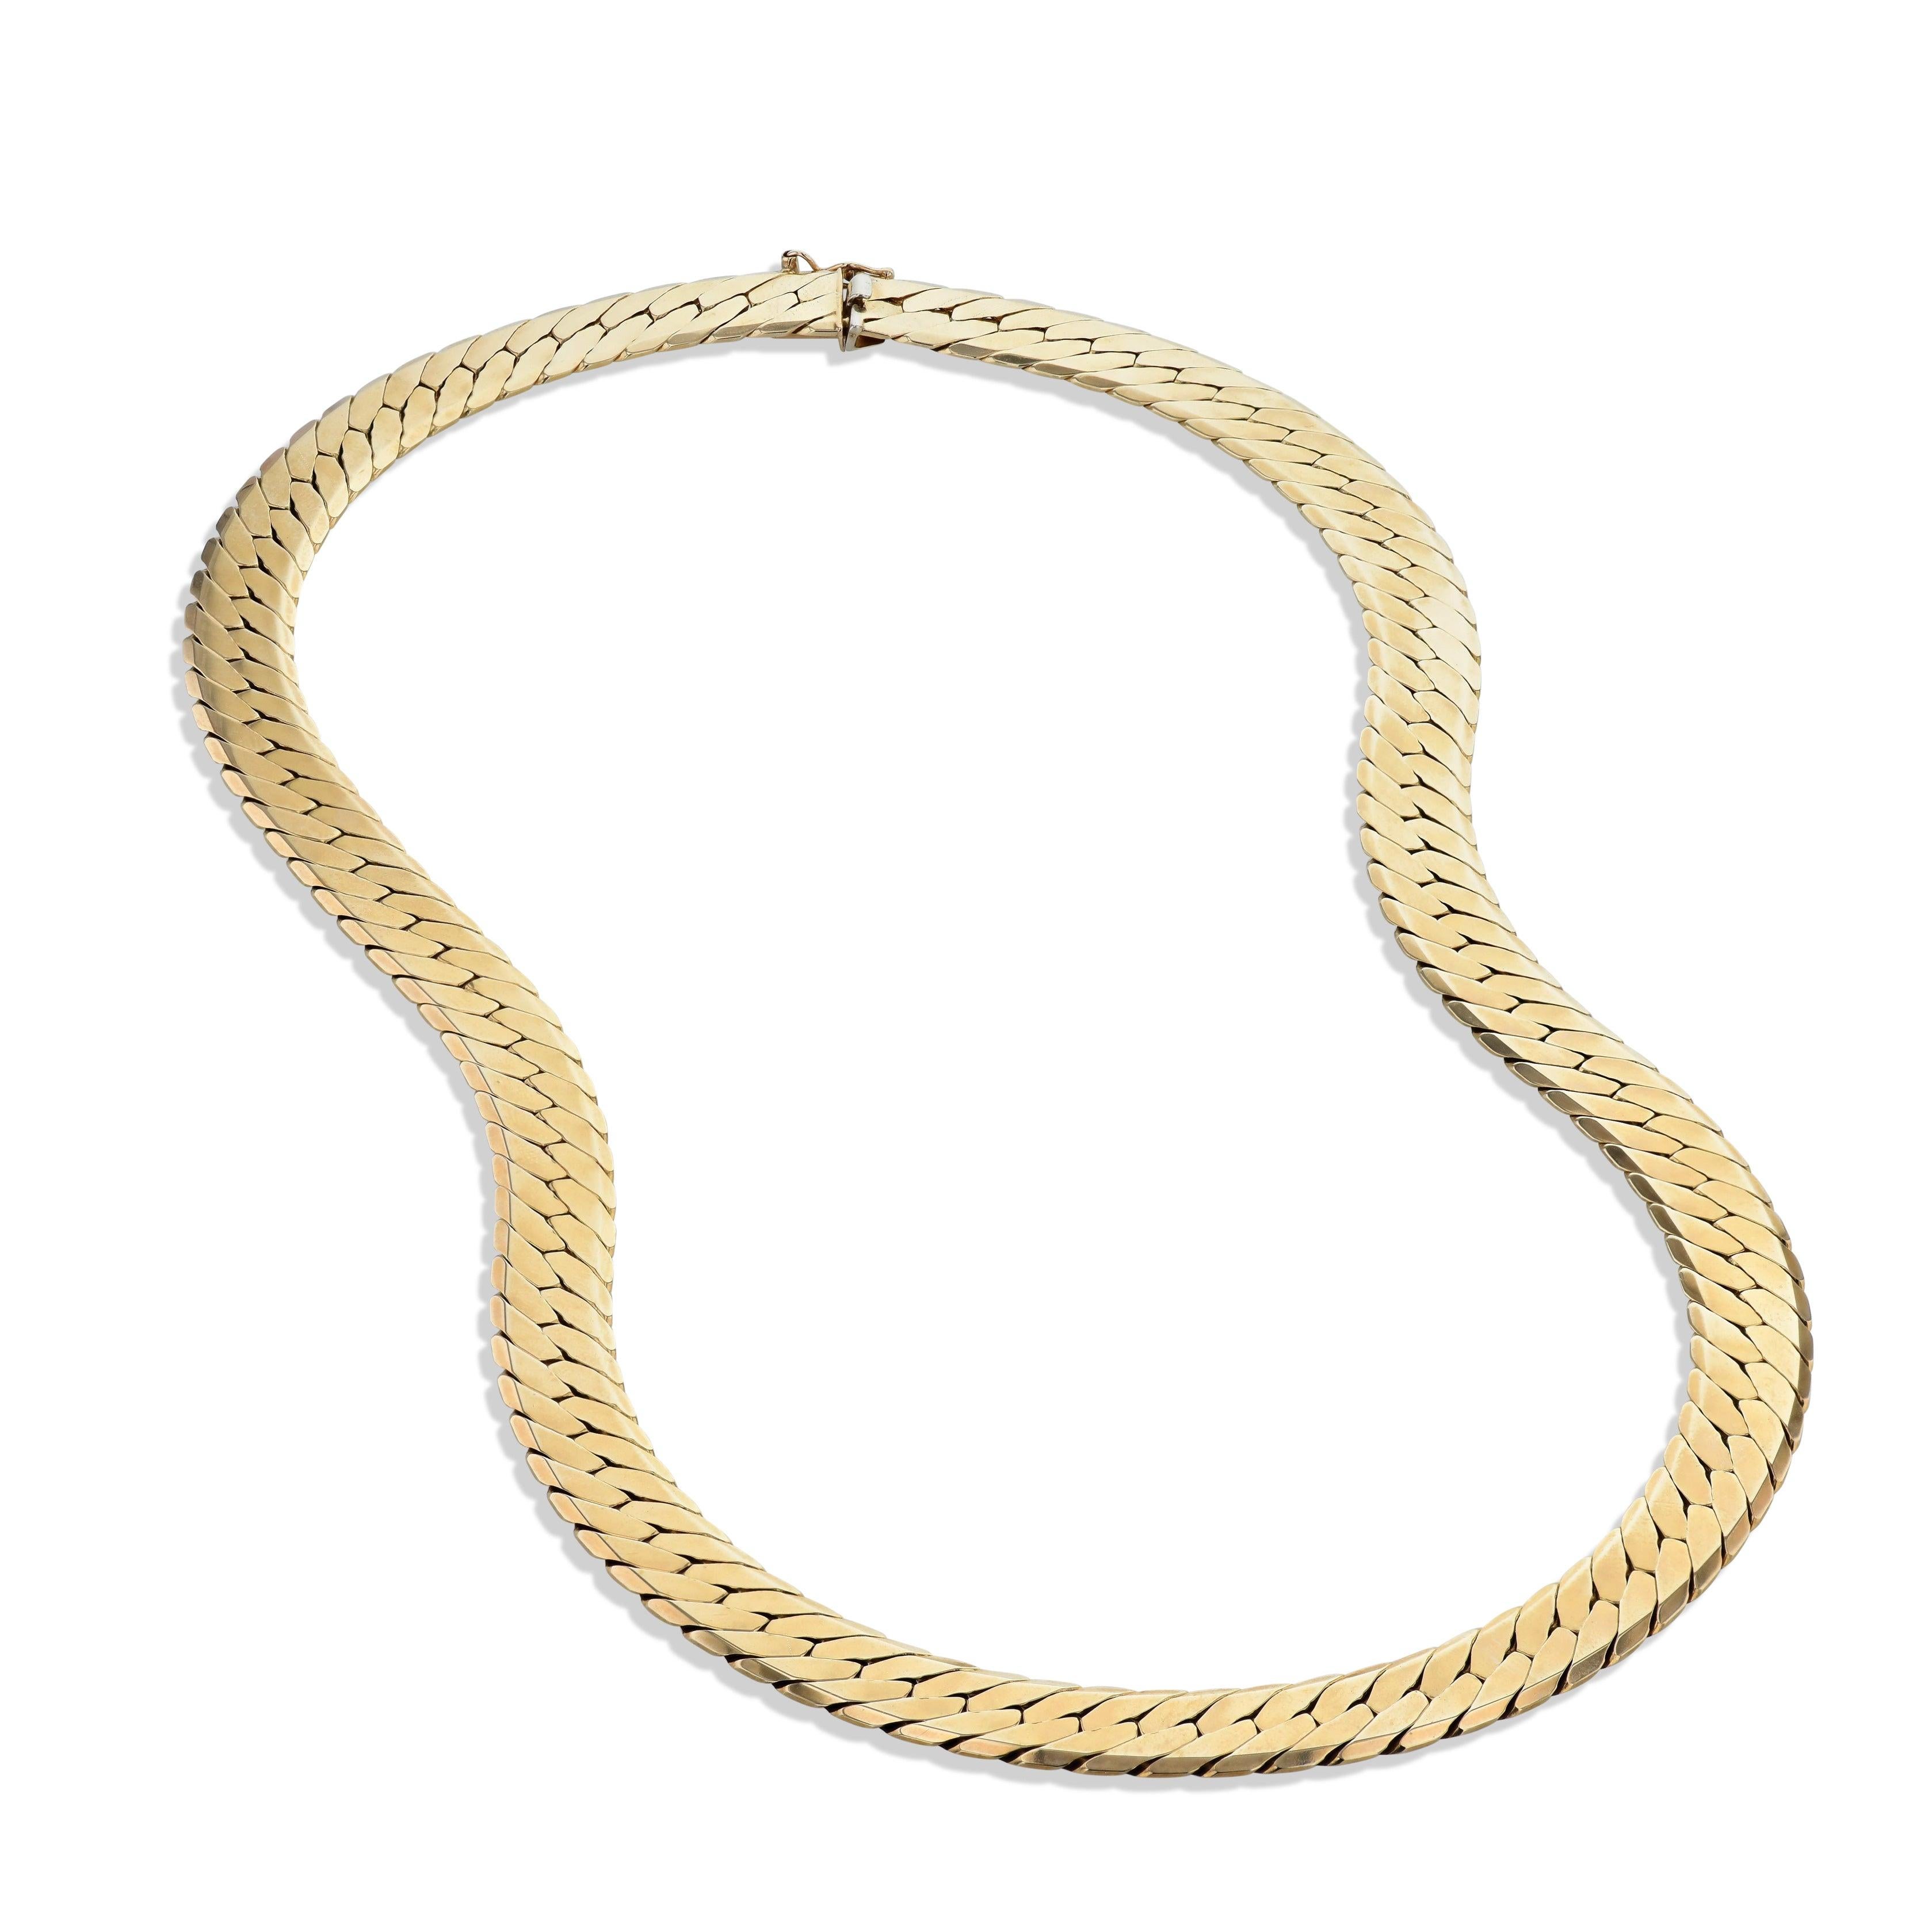 
This beautifully stunning 14 Karat Yellow Gold Herringbone necklace is 20